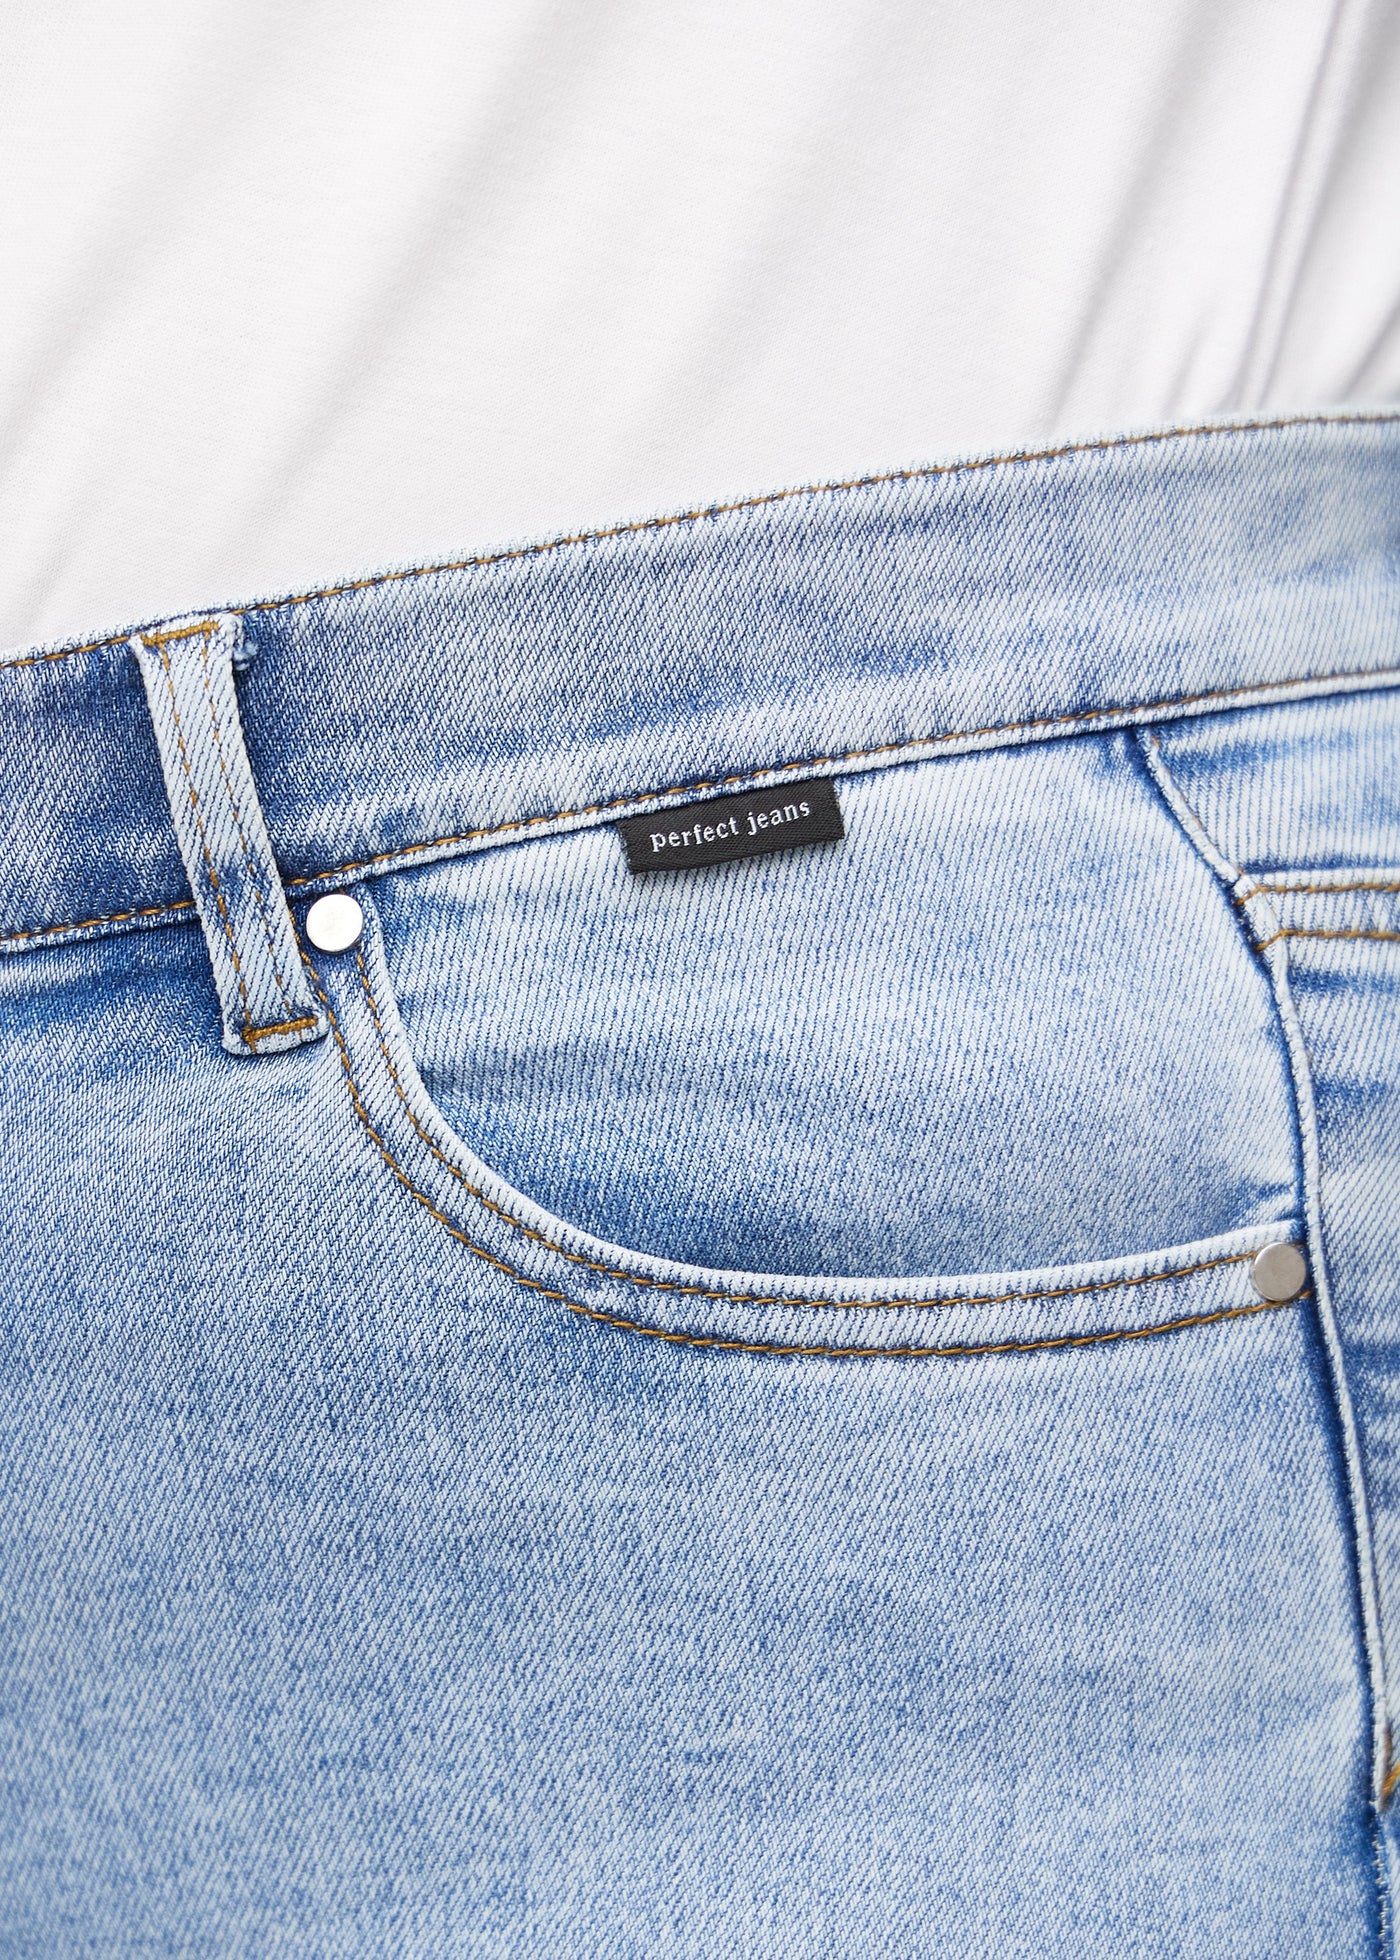 Forlommen på et par lys denim jeans, hvor man kan se logoet på en plus-size model.